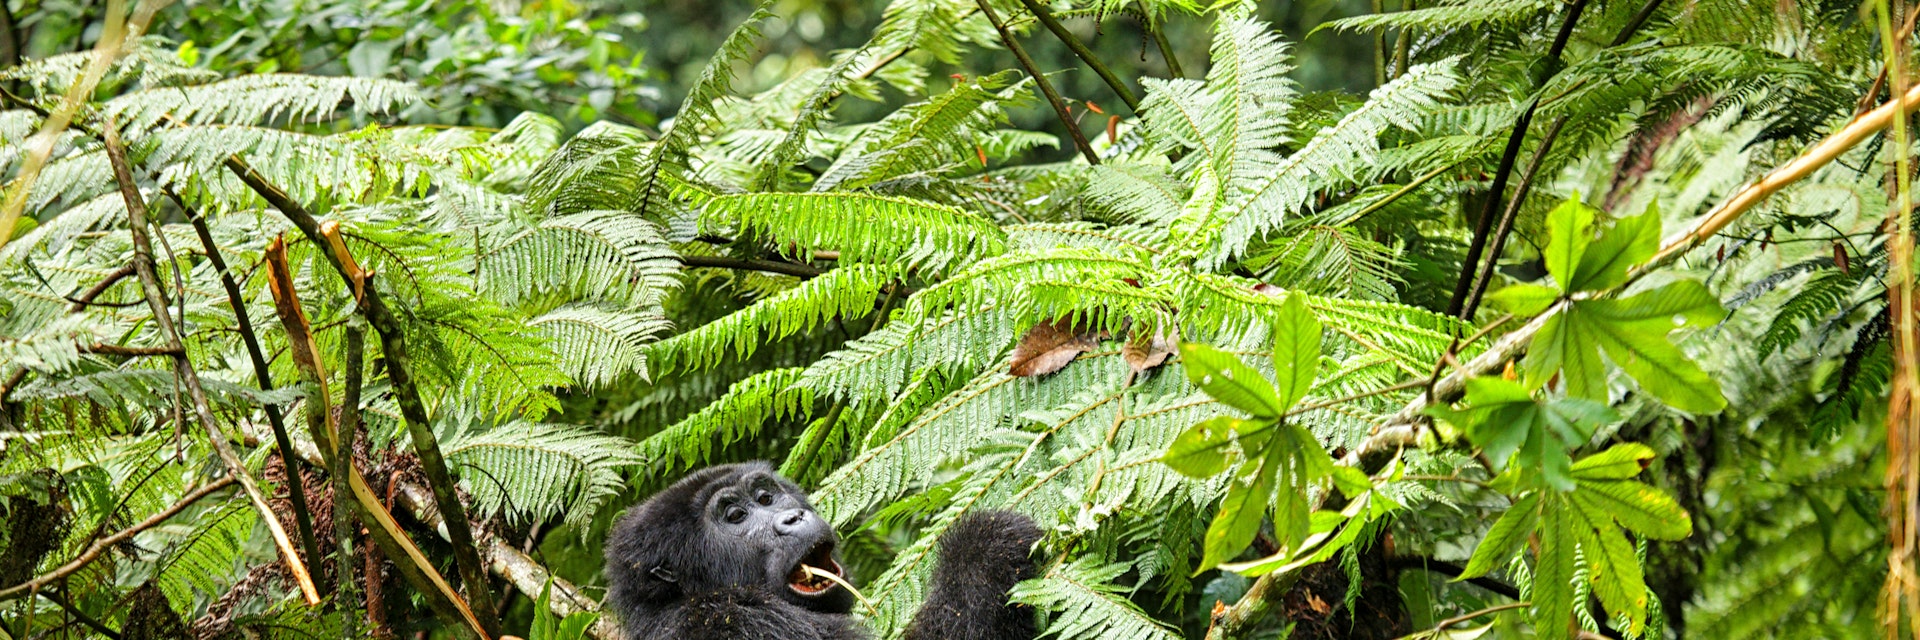 Uganda, Bwindi Impenetrable National Park, Bwindi Impenetrable Forest, mountain gorilla